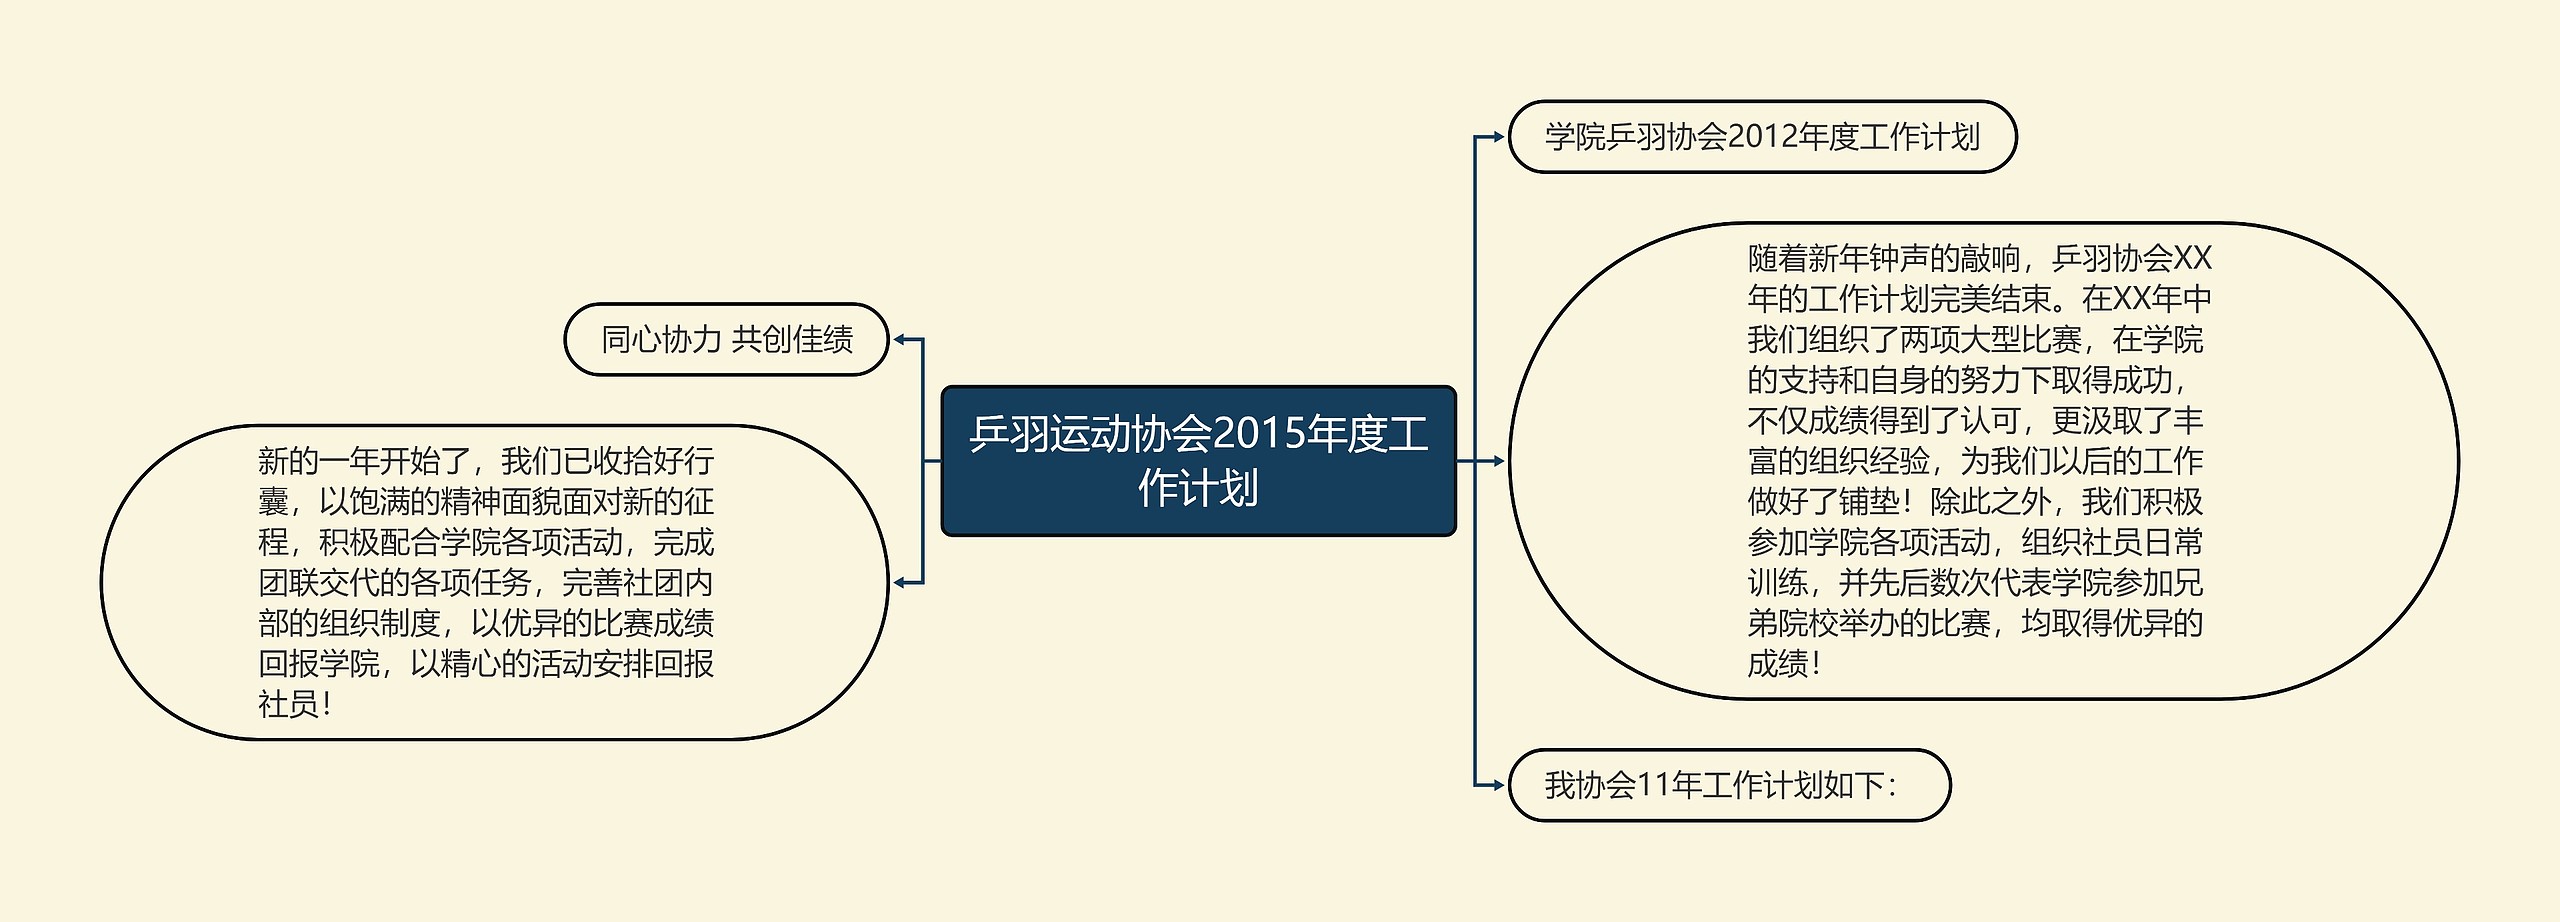 乒羽运动协会2015年度工作计划思维导图